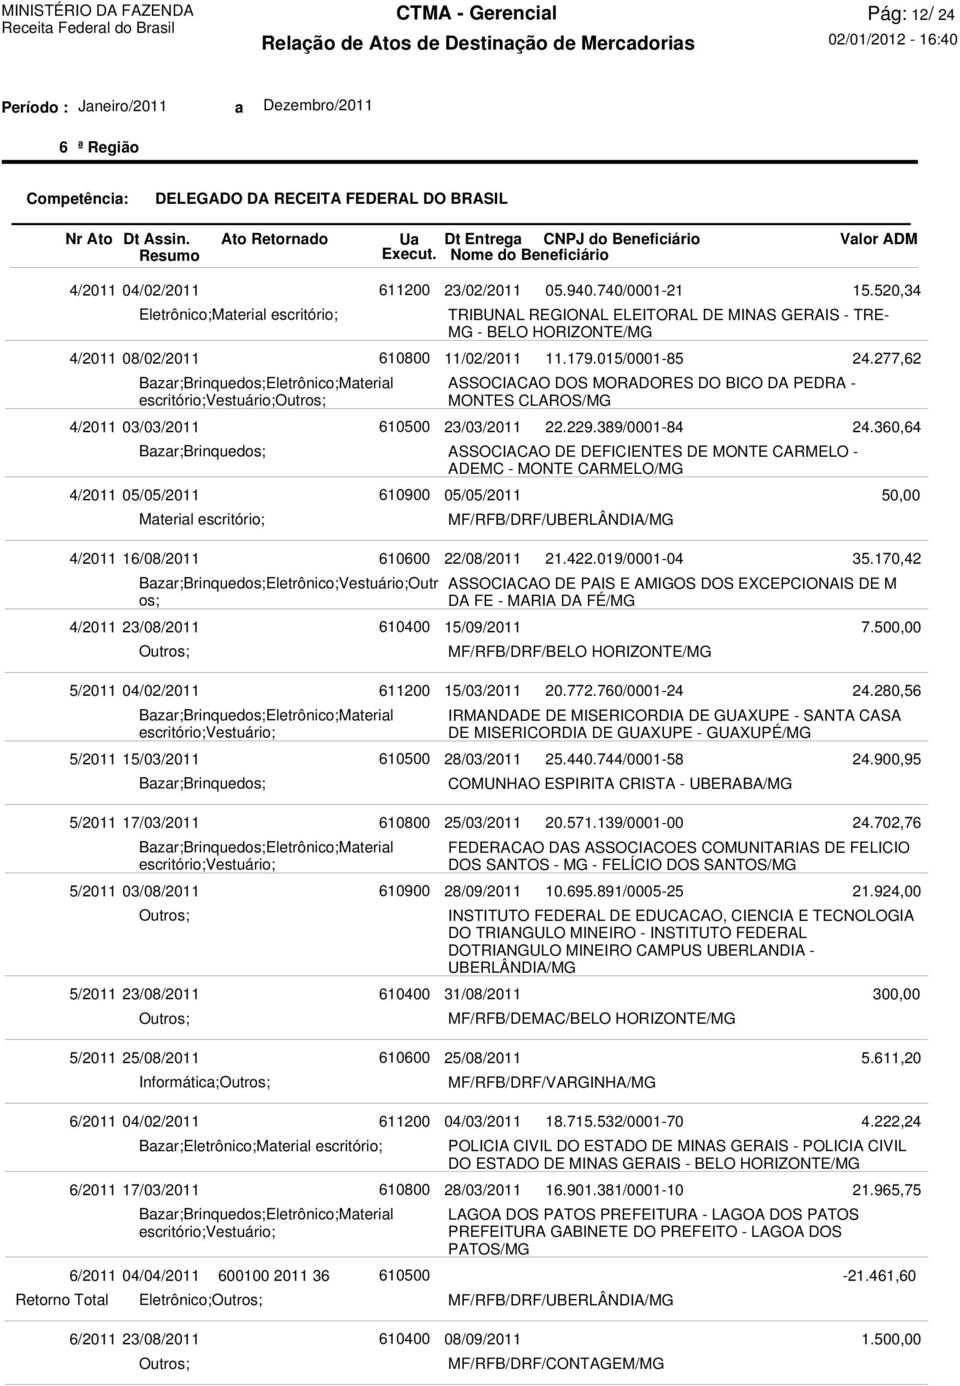 389/0001-84 ASSOCIACAO DE DEFICIENTES DE MONTE CARMELO - ADEMC - MONTE CARMELO/MG MF/RFB/DRF/UBERLÂNDIA/MG 15.520,34 24.277,62 24.